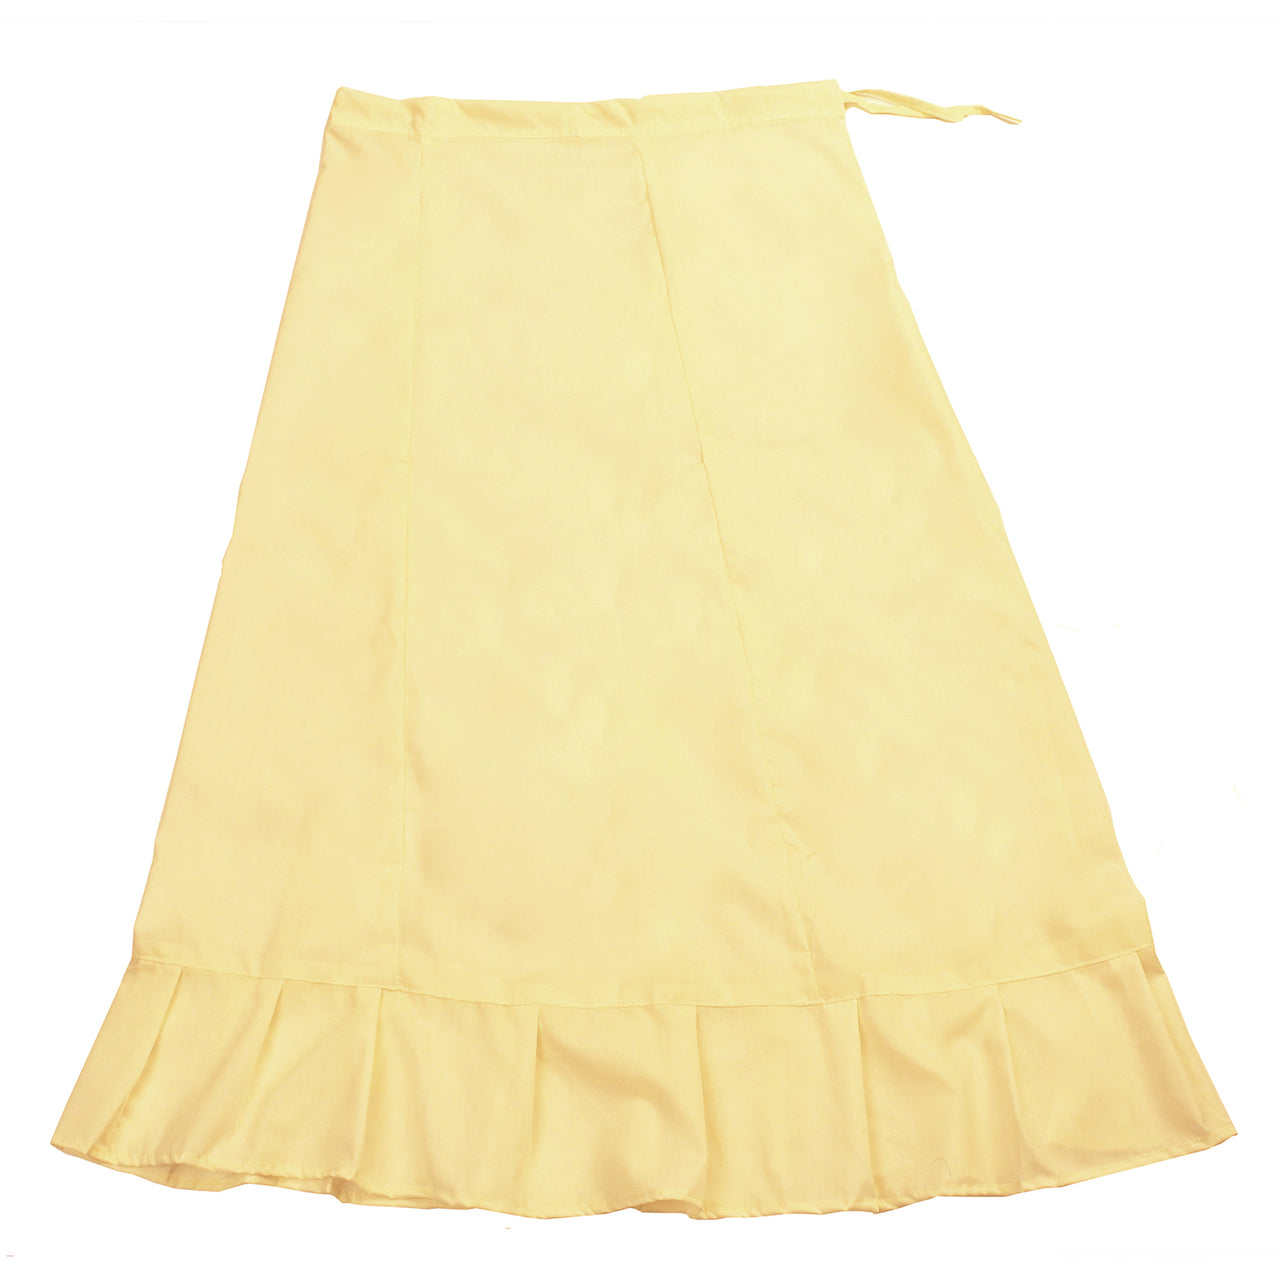 Cream - Sari (Saree) Petticoat - Available in S, M, L & XL - Underskir